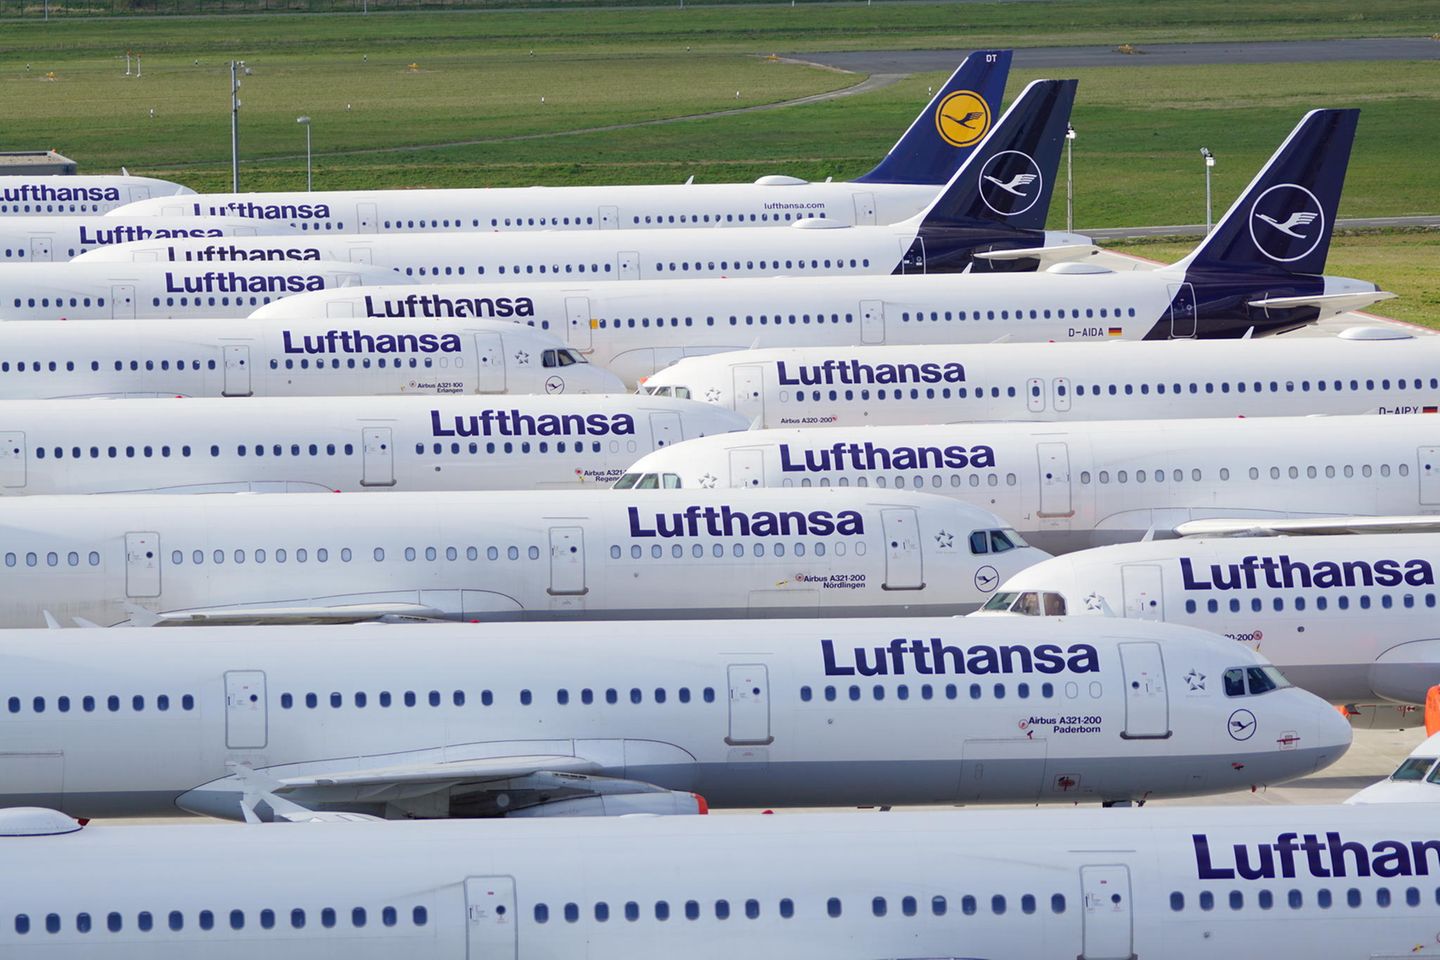 Am Flughafen Berlin-Brandenburg stehen geparkte Lufthansa-Maschinen